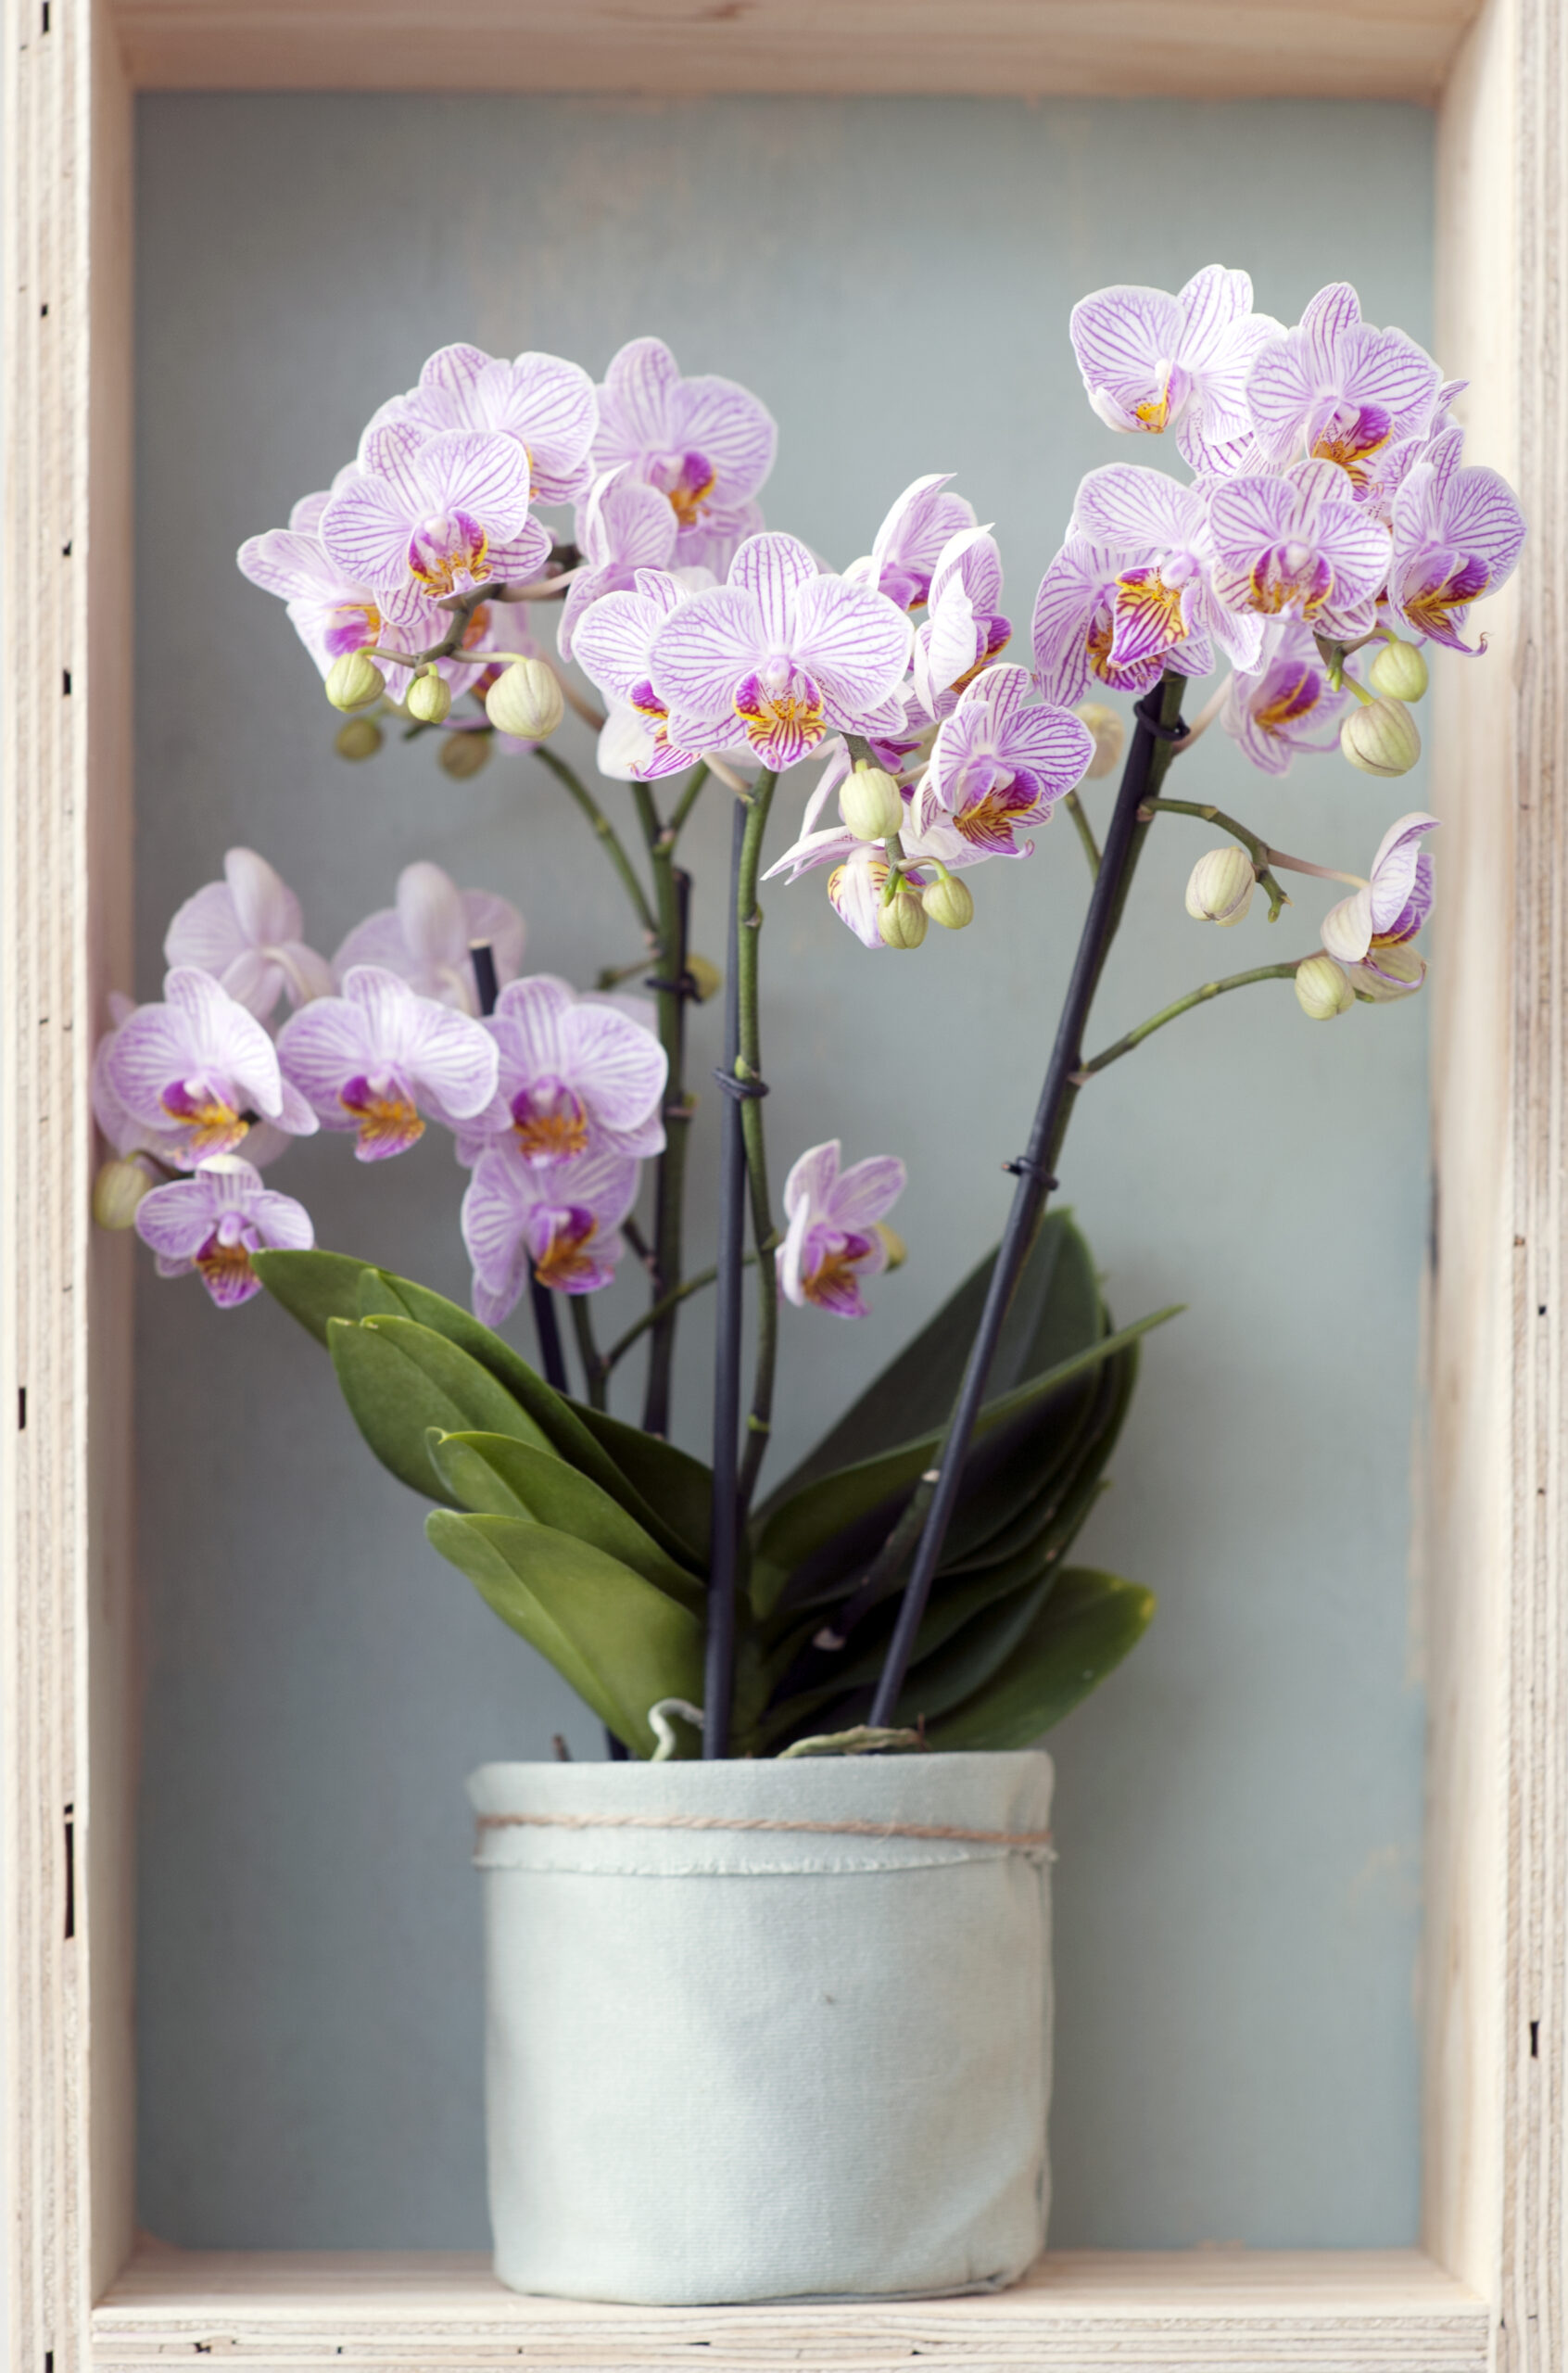 L’orchidée Phalaenopsis - orchidée du mois